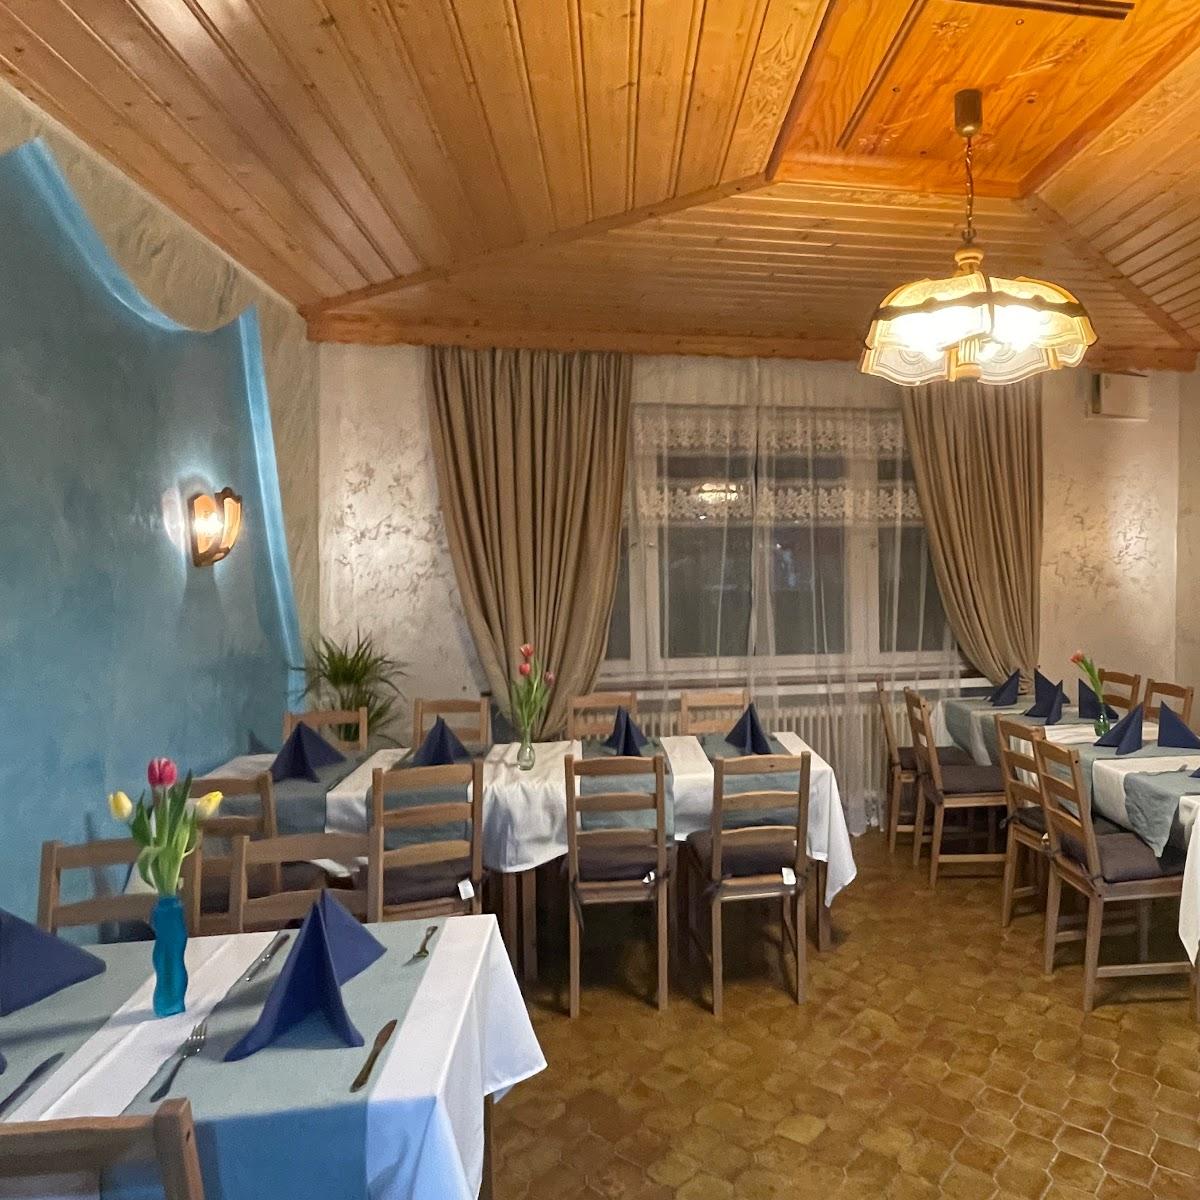 Restaurant "Taverne Kreta" in Niedenstein